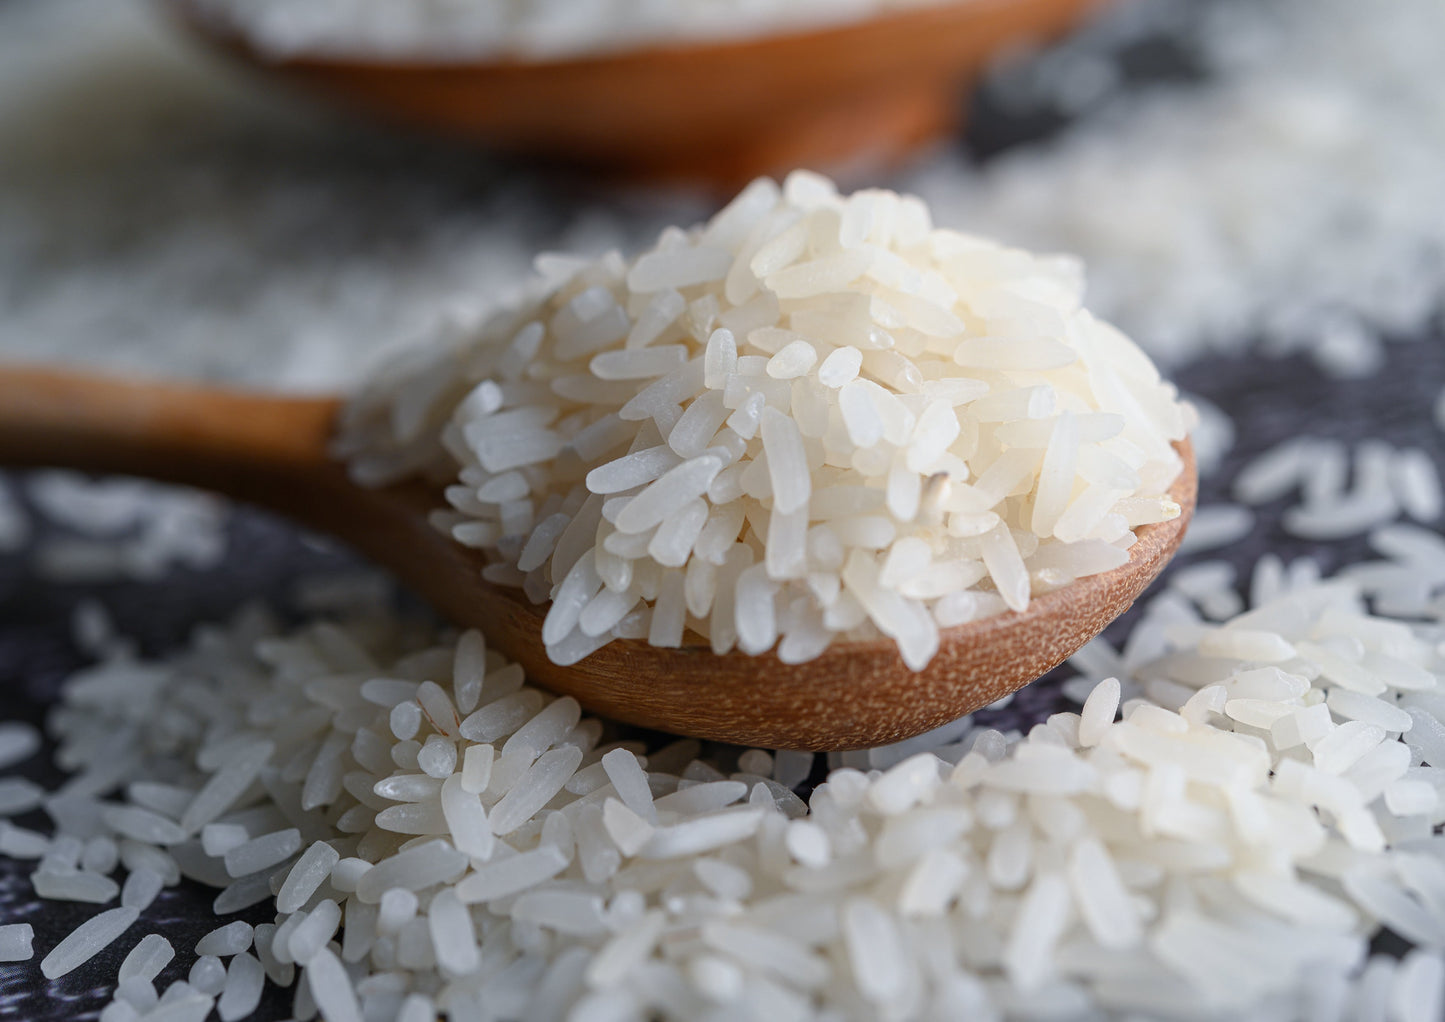 Organic Jasmine Rice - Raw White Rice, Non-GMO, Kosher, Bulk - by Food to Live